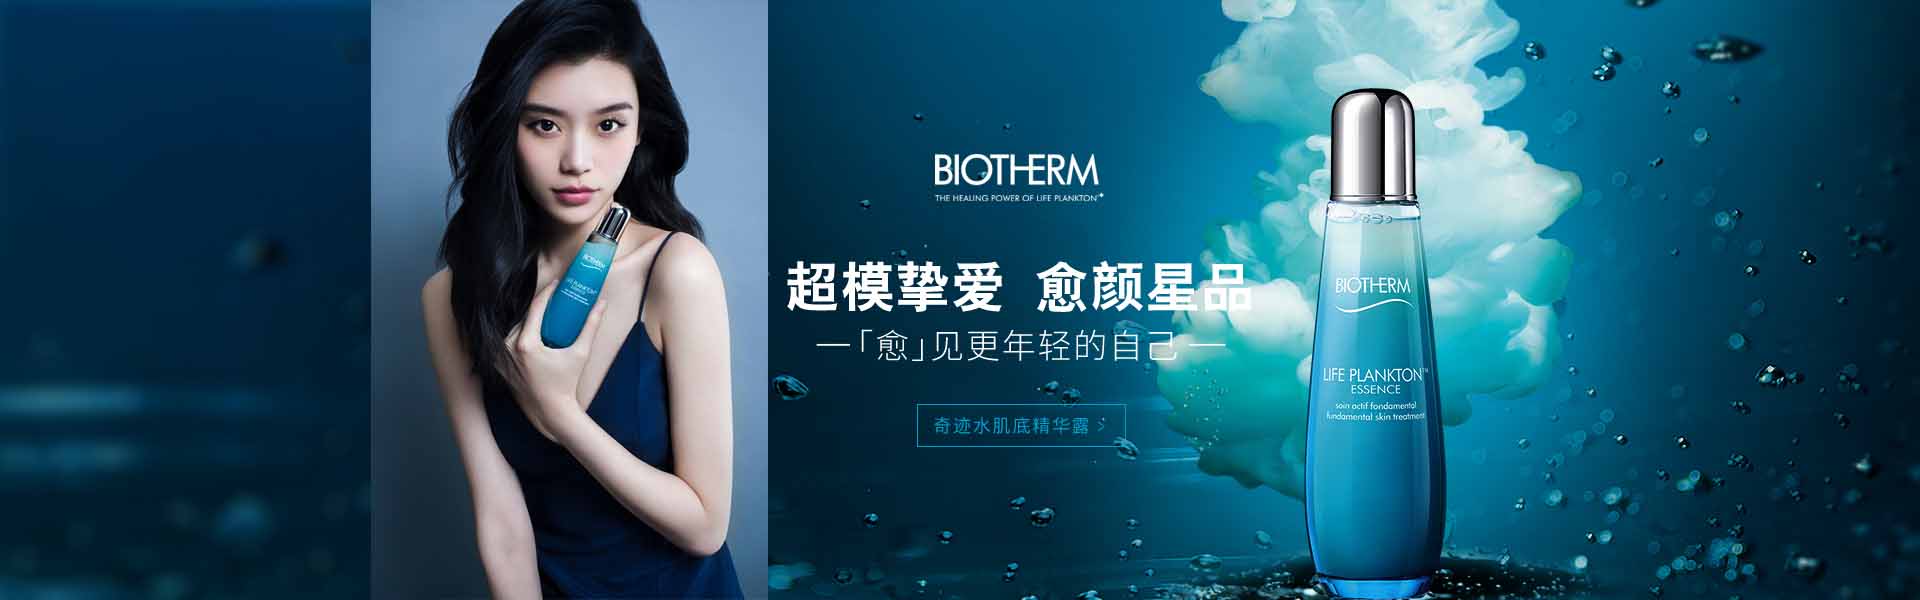 碧欧泉_化妆护肤品成分介绍_Biotherm是哪个国家的品牌_是什么牌子